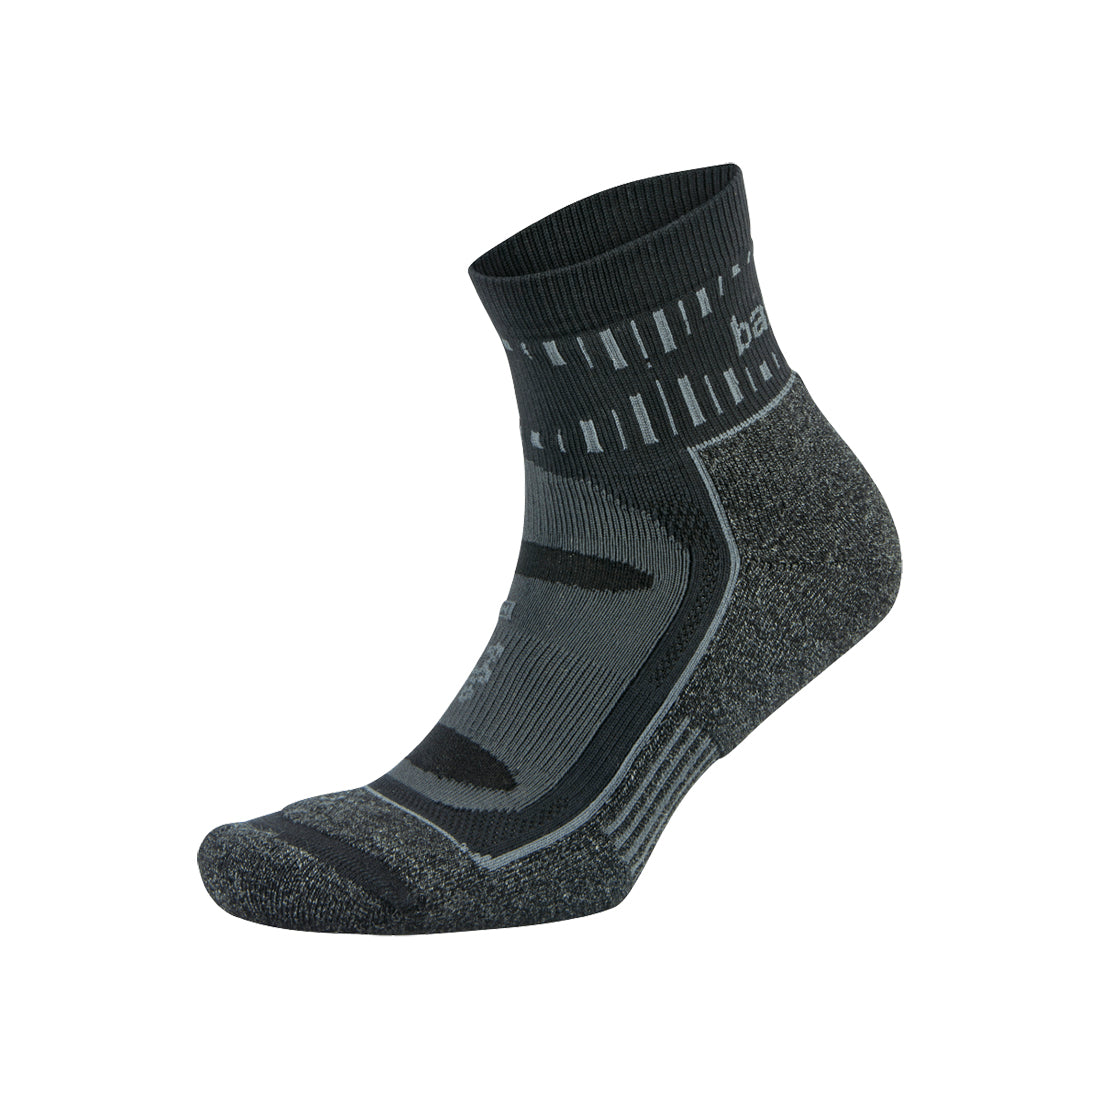 Unisex Blister Resist Quarter Running Socks - Grey/Black